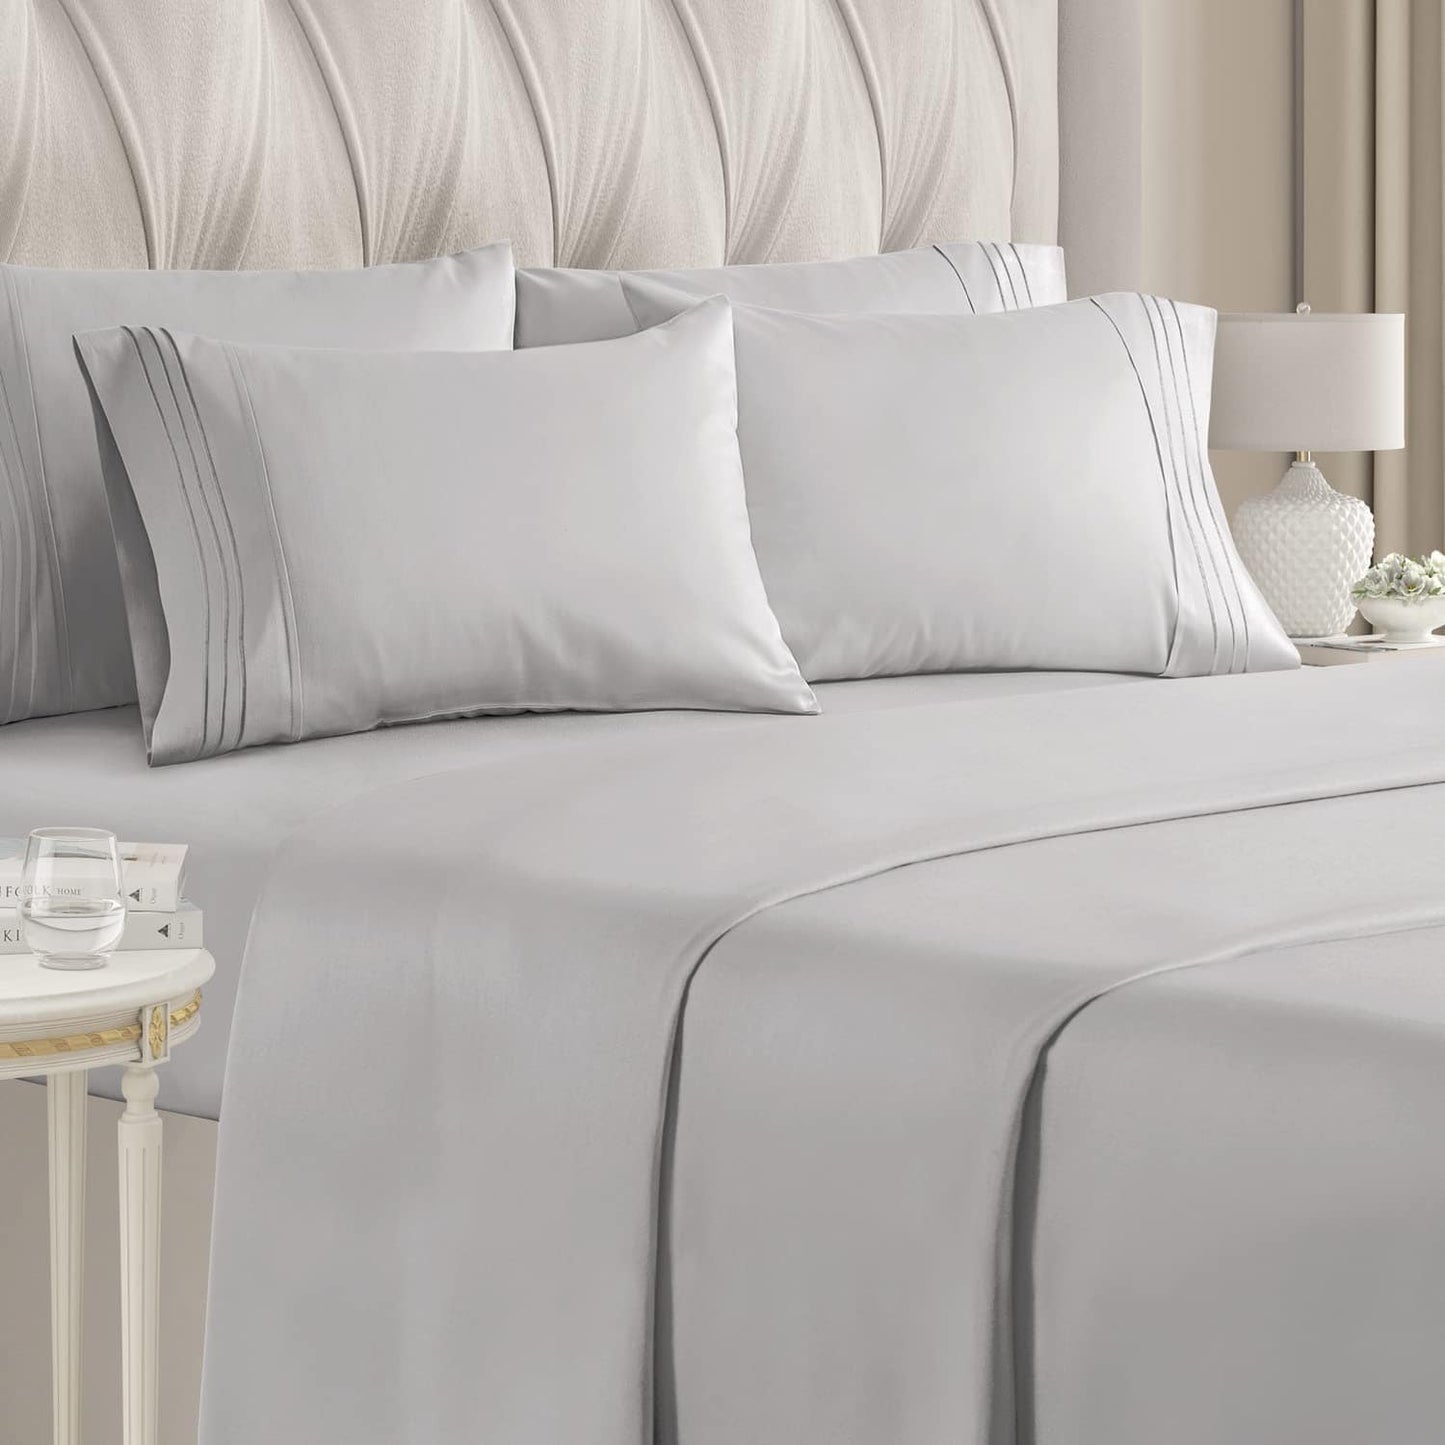 CGK Comforter/Quilt/Duvet Queen / Grey CGK - Luxury Bed Sheets 6 Piece Set